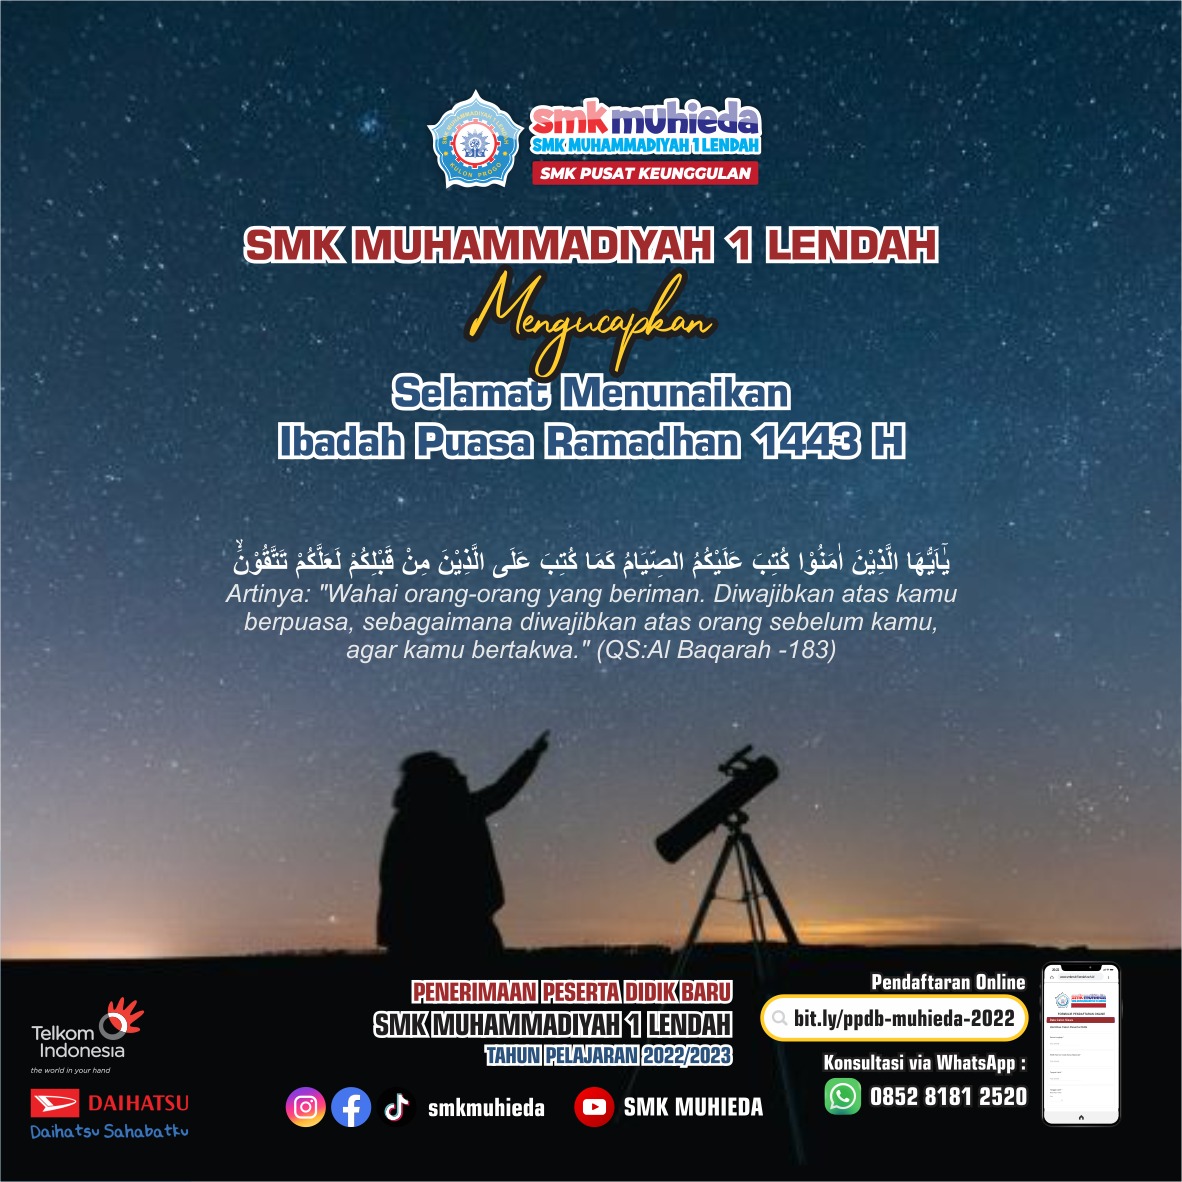 Jadwal Imsakiyah Ramadhan 1443 H